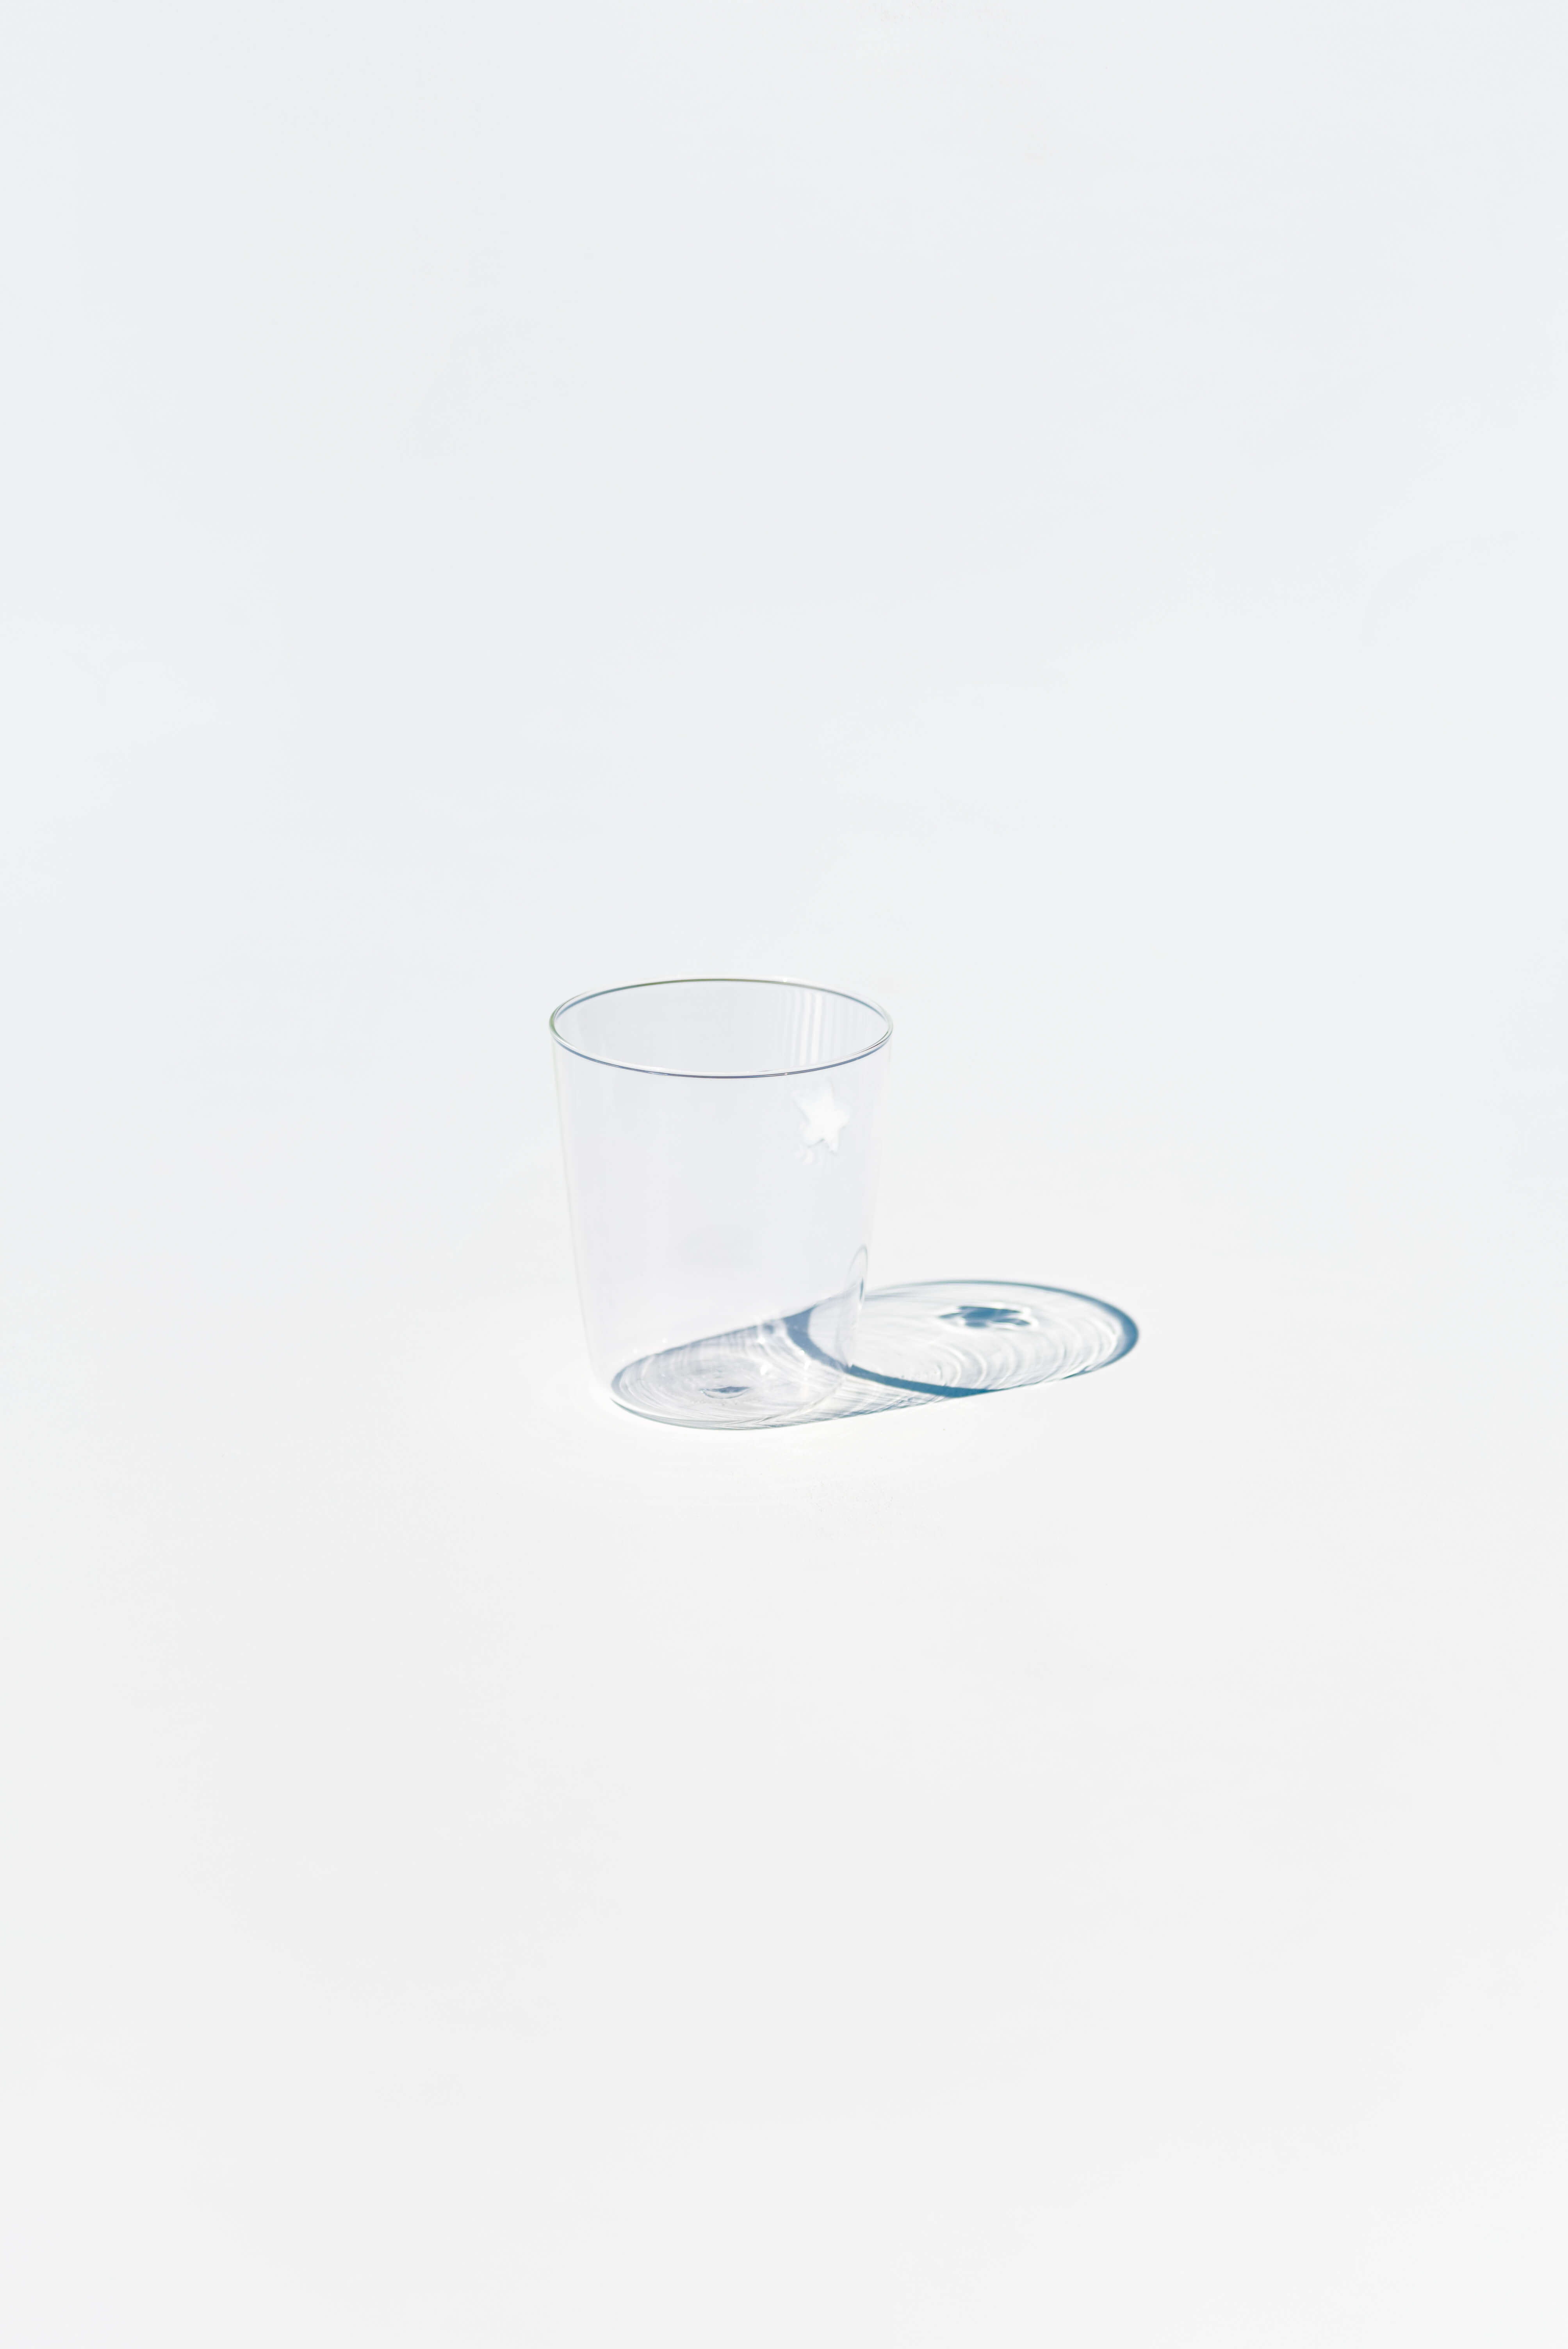 Zafferano Symbols Mischkarton - Weißes Milchglas